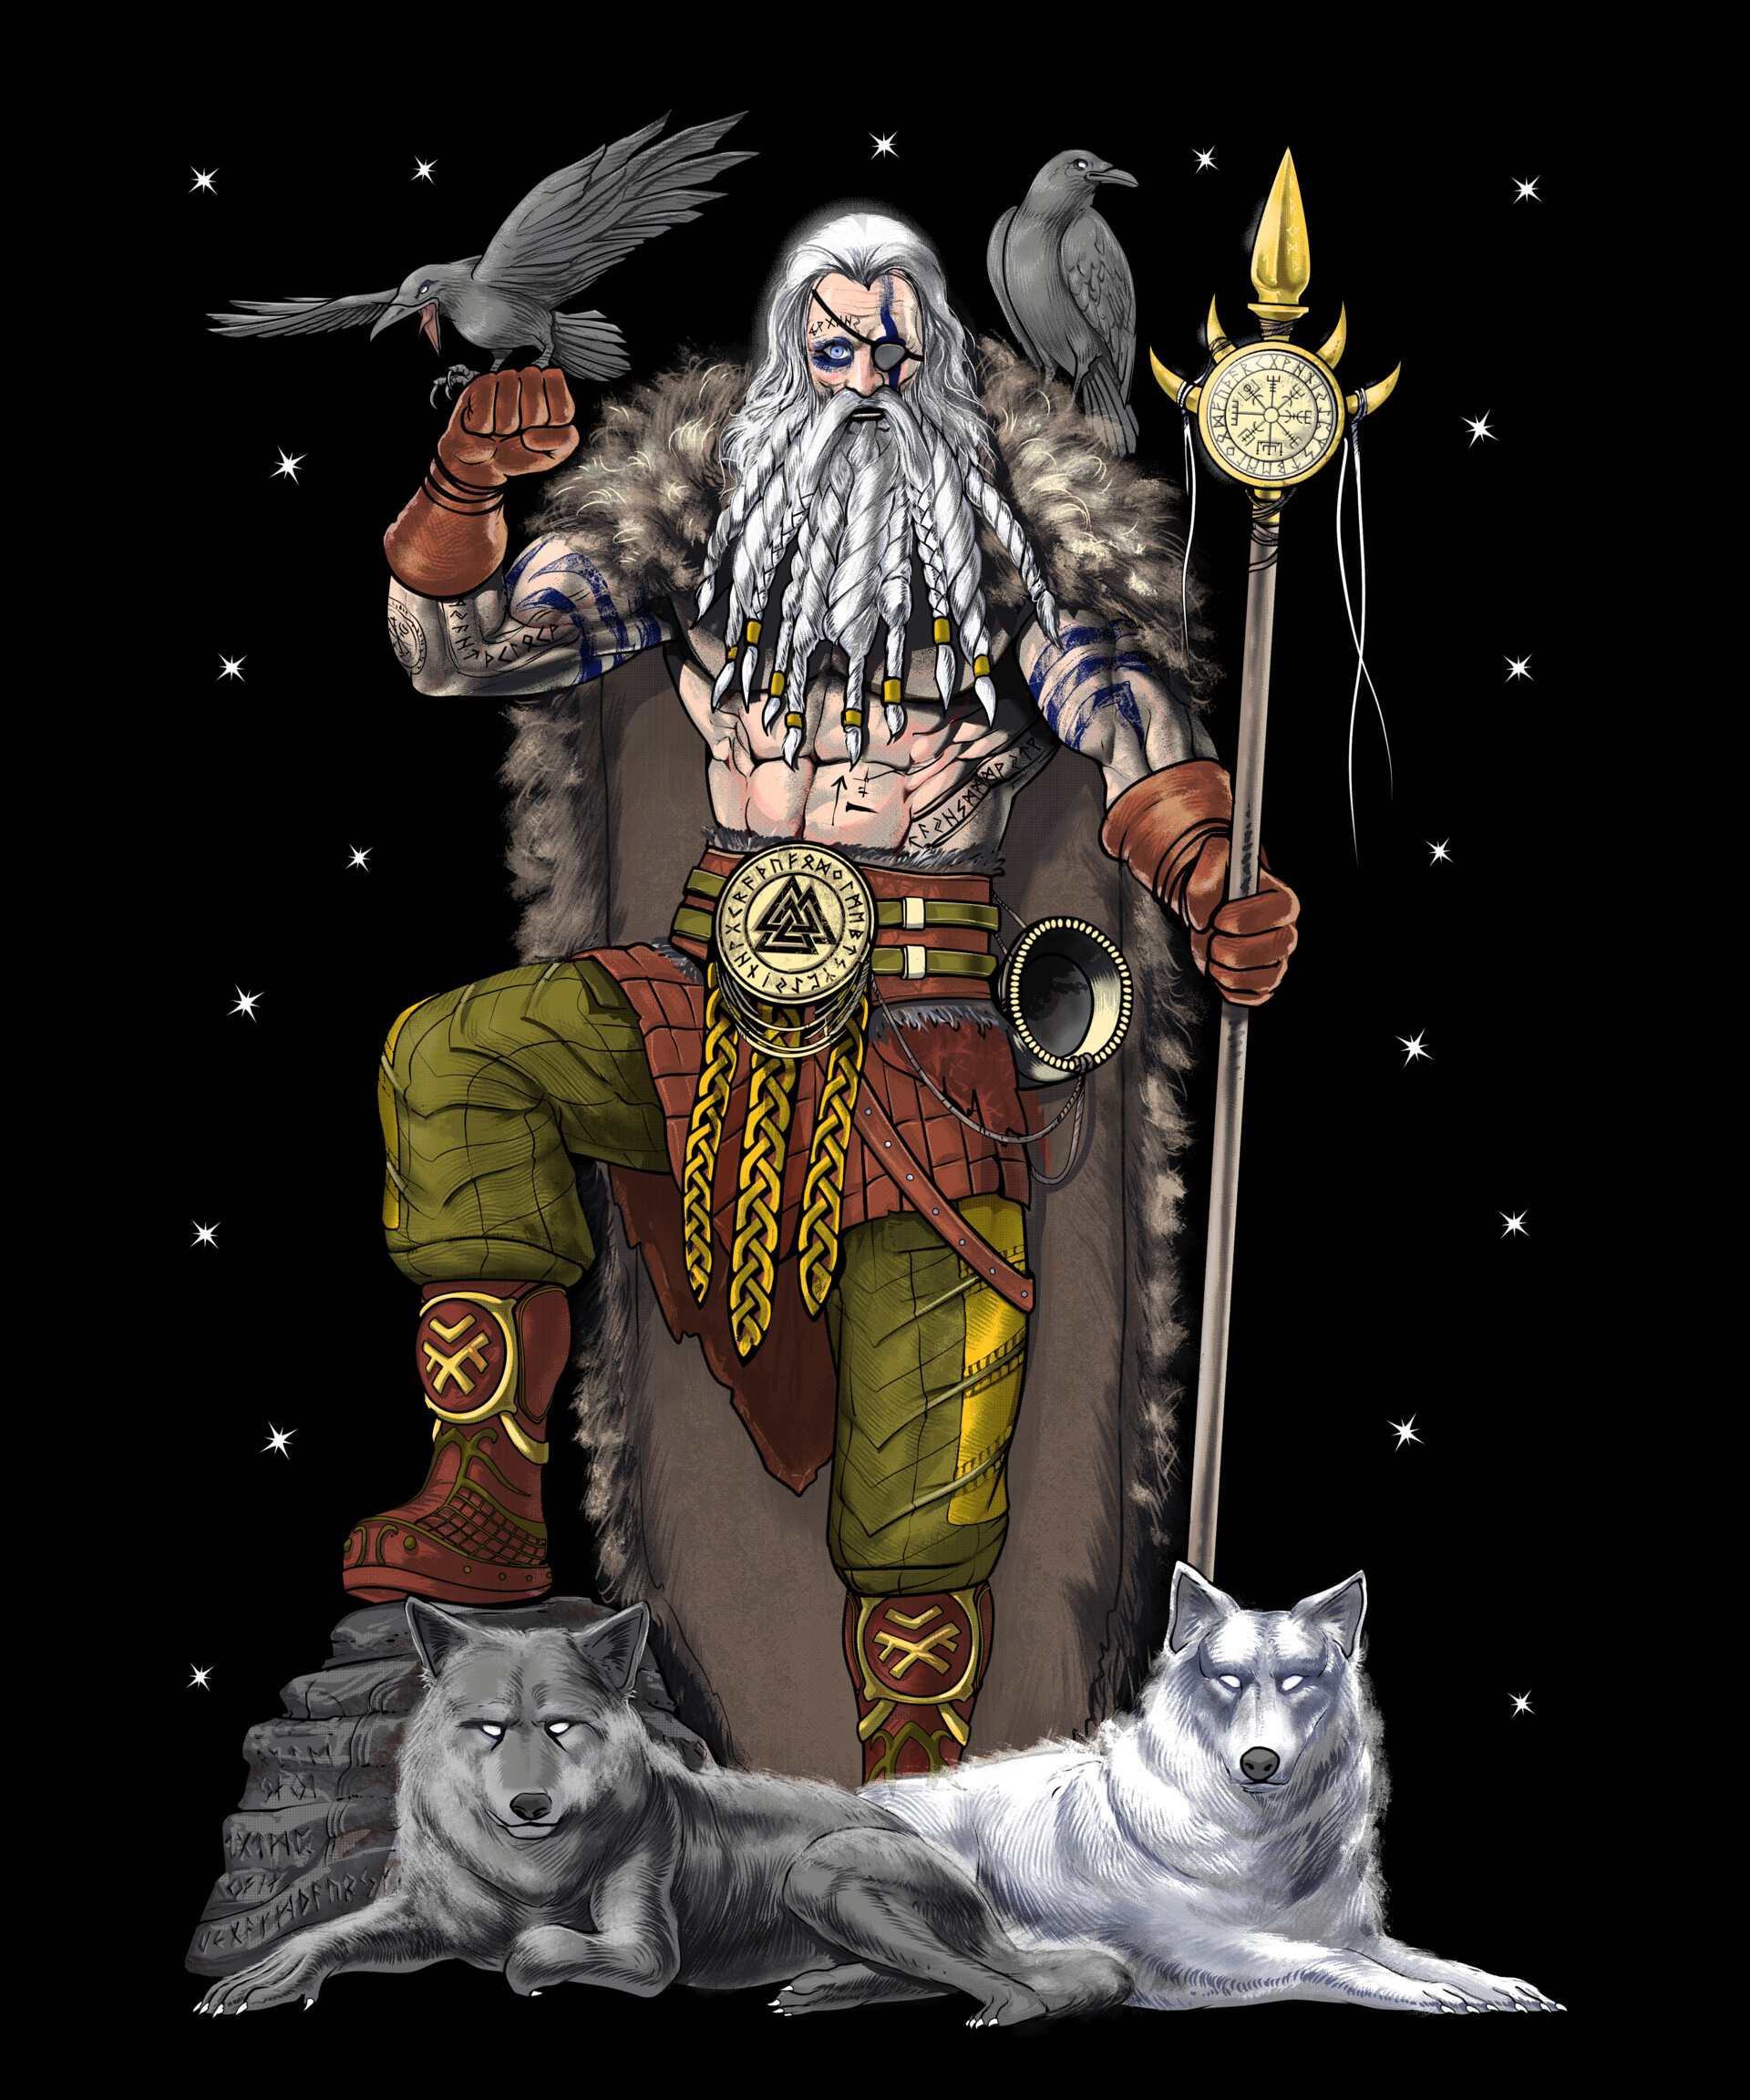 Odin - Norse Mythology